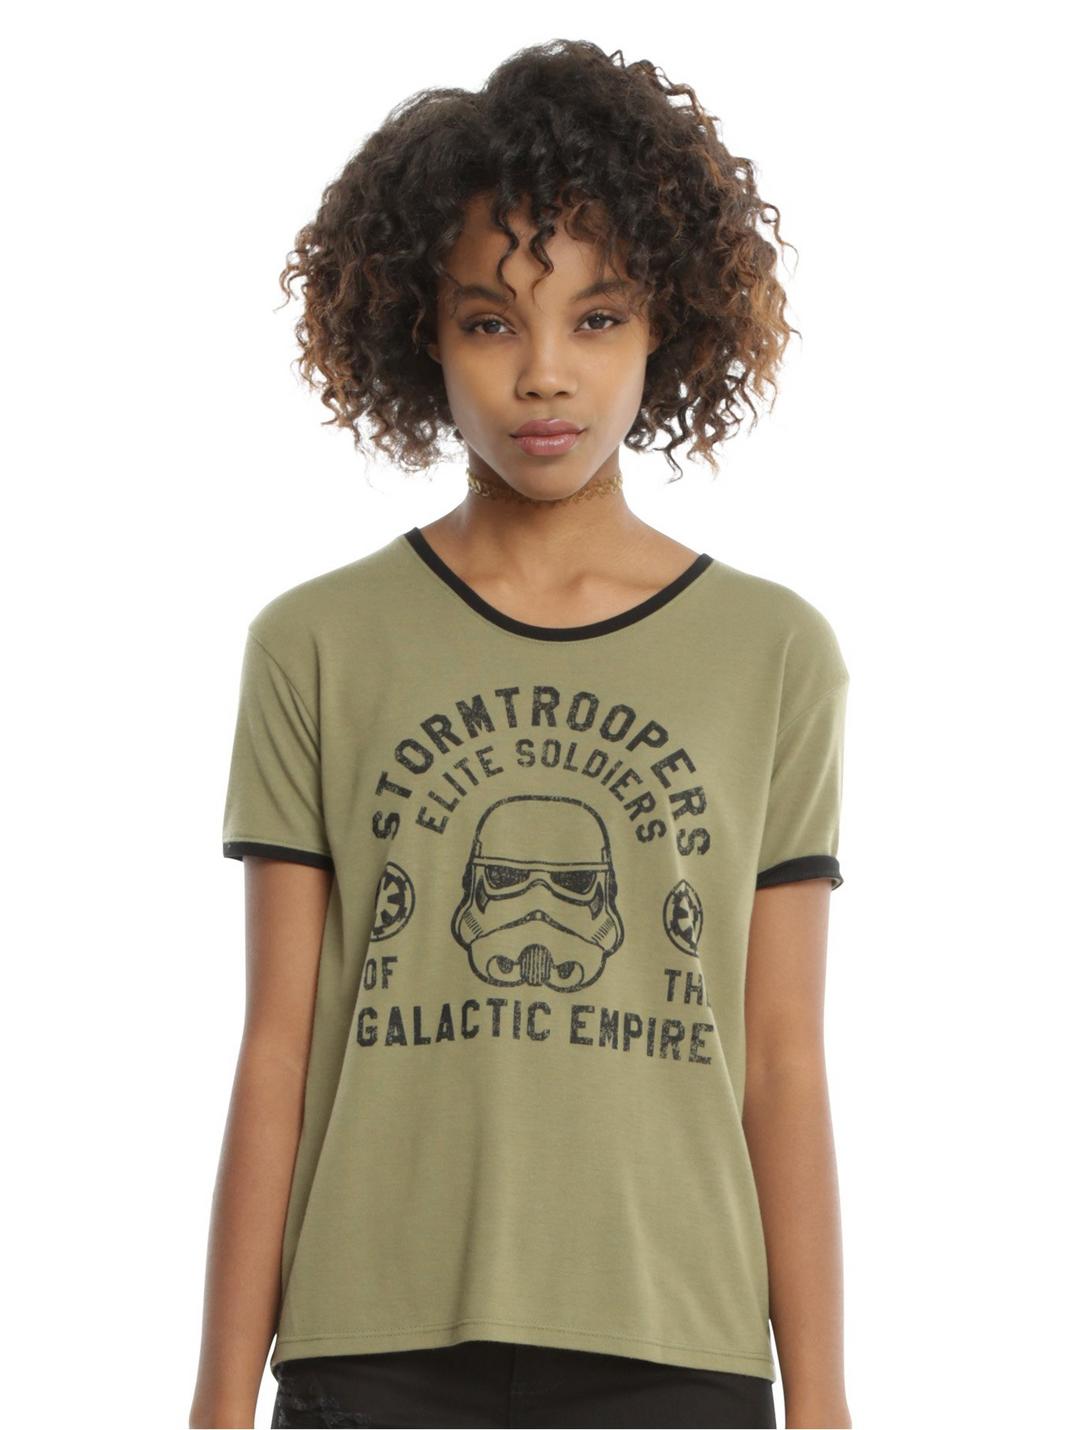 Star Wars Stormtrooper Girls Ringer T-Shirt, OLIVE, hi-res